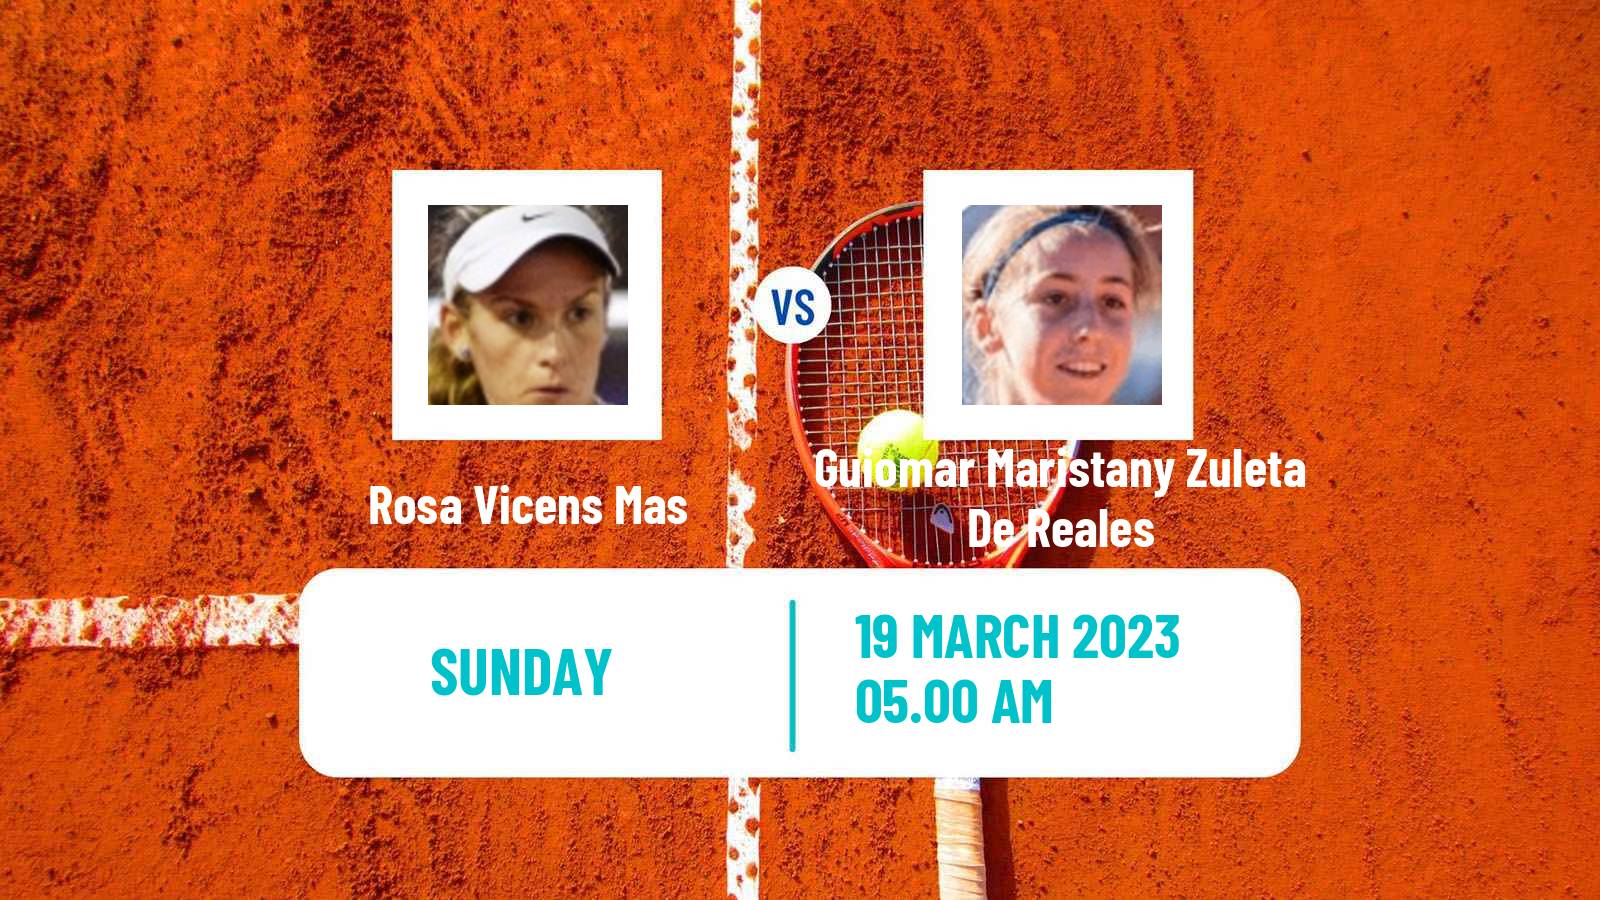 Tennis ITF Tournaments Rosa Vicens Mas - Guiomar Maristany Zuleta De Reales